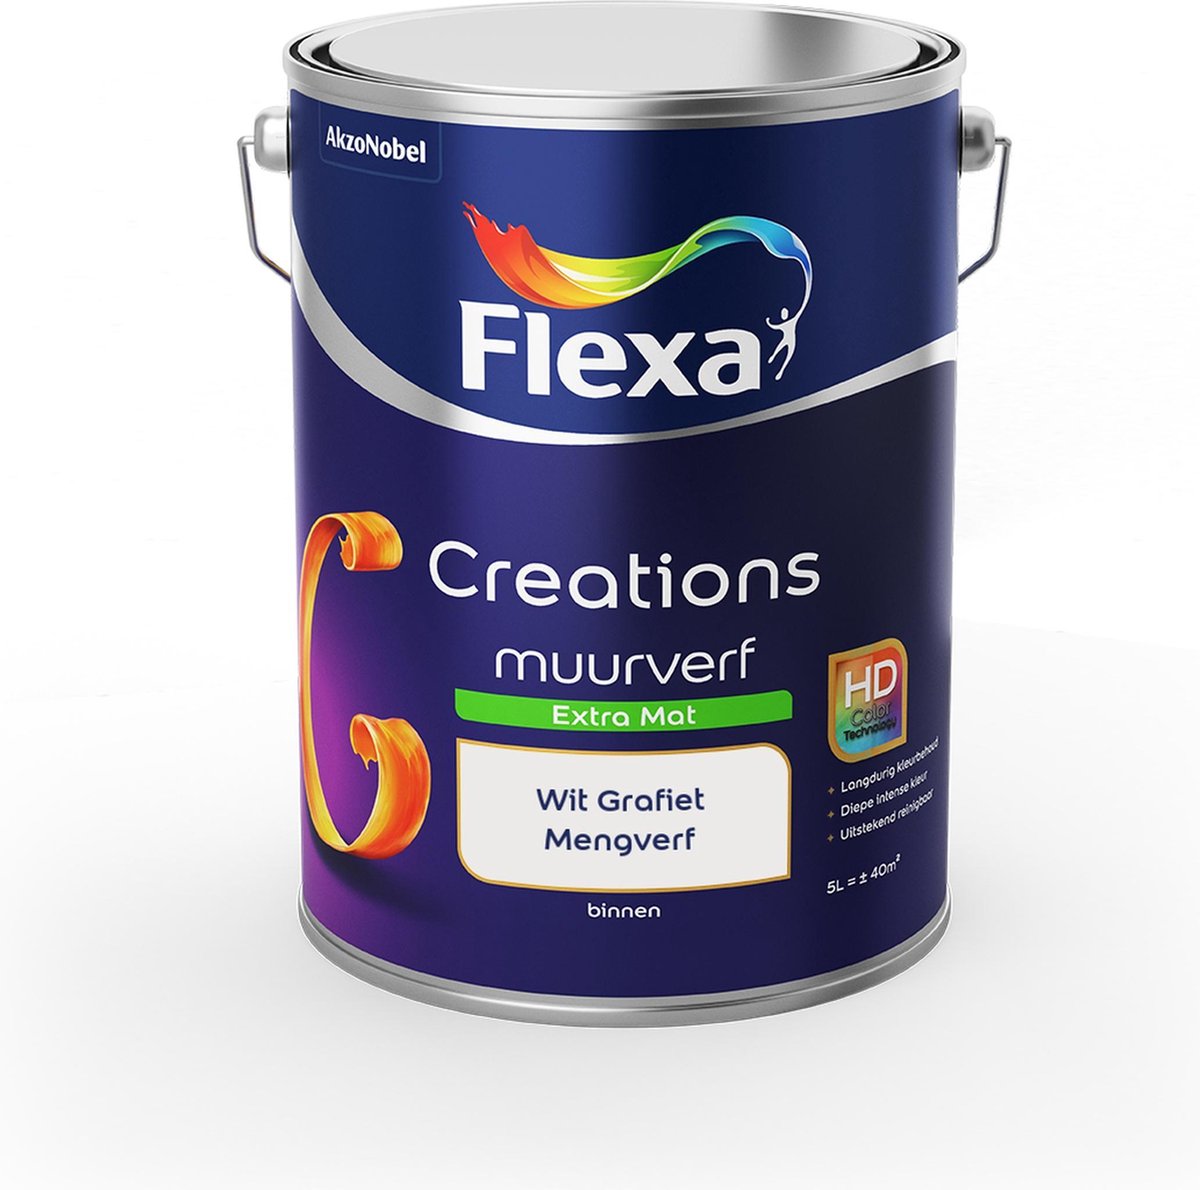 Flexa Creations Muurverf - Extra Mat - Mengkleuren Collectie - Wit Grafiet - 5 liter